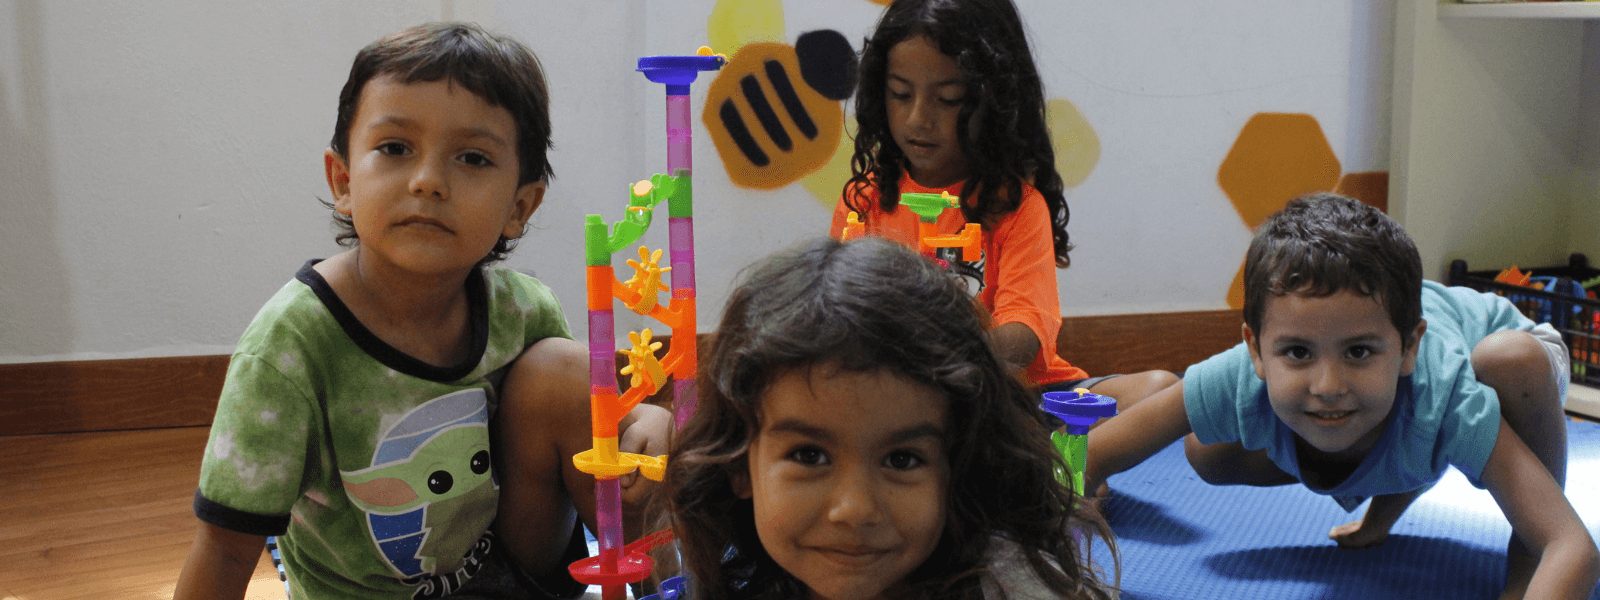 Ecoludoteca La Ceiba, un espacio para compartir, aprender y jugar